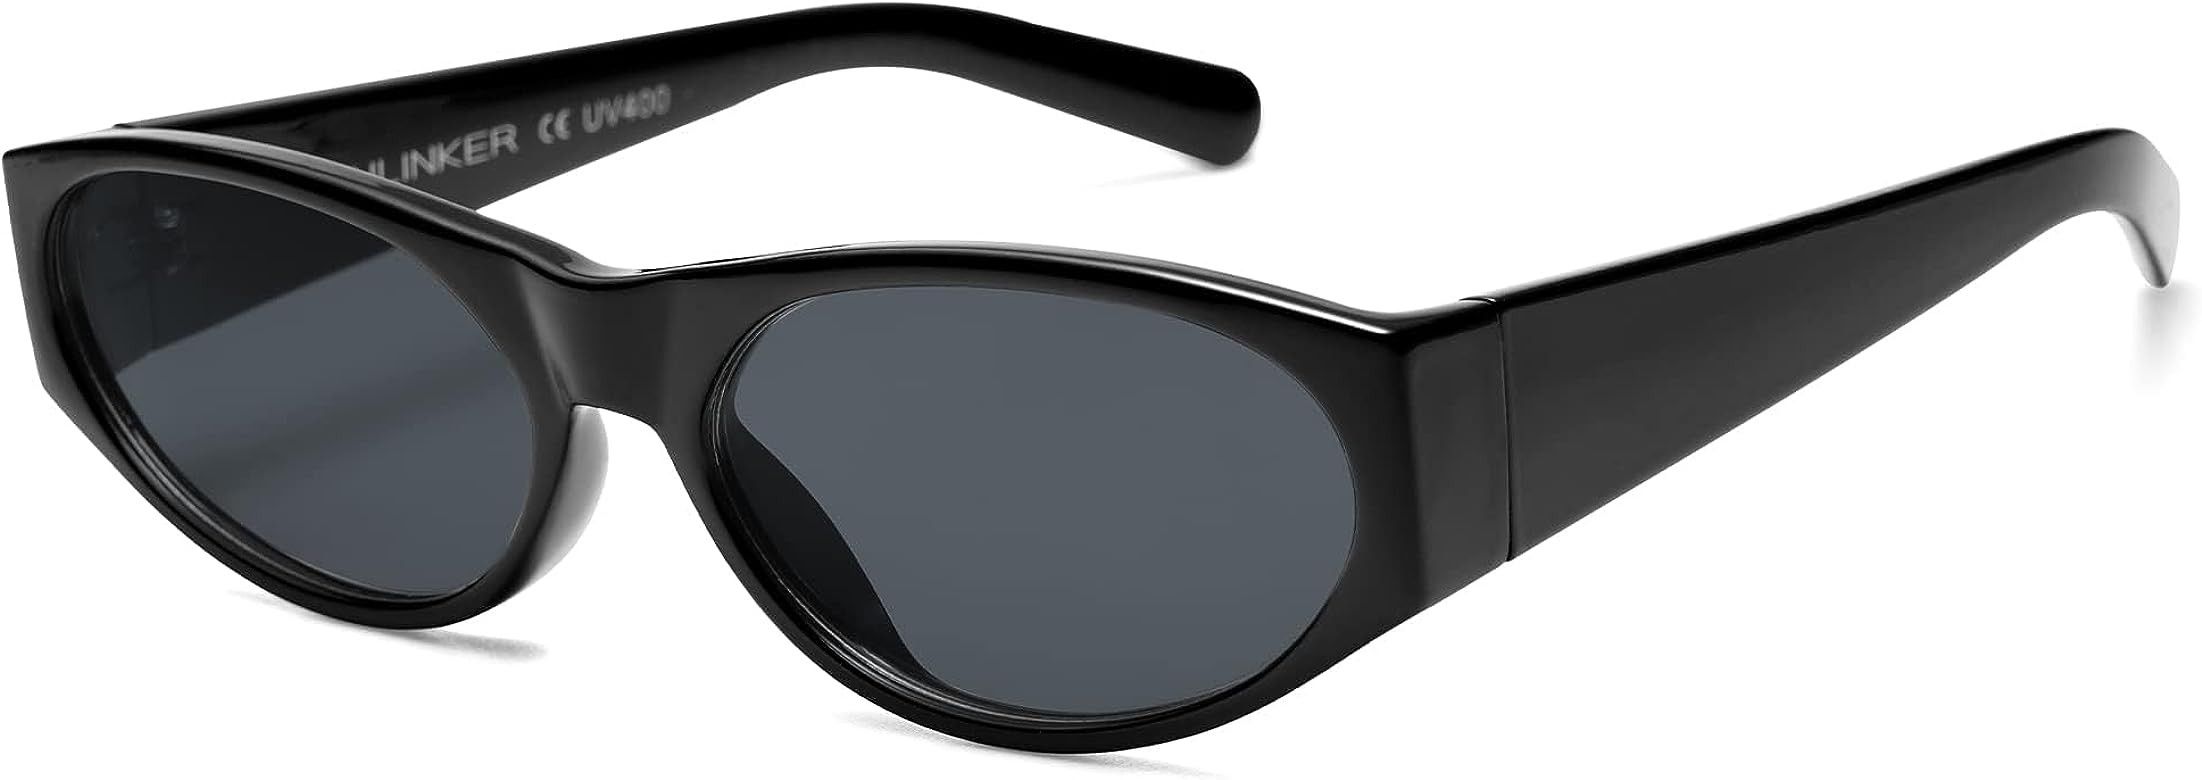 VANLINKER Polarized Retro Small Oval Cat Eye Sunglasses Womens Men Trendy Cateye Shades Narrow Sk... | Amazon (US)